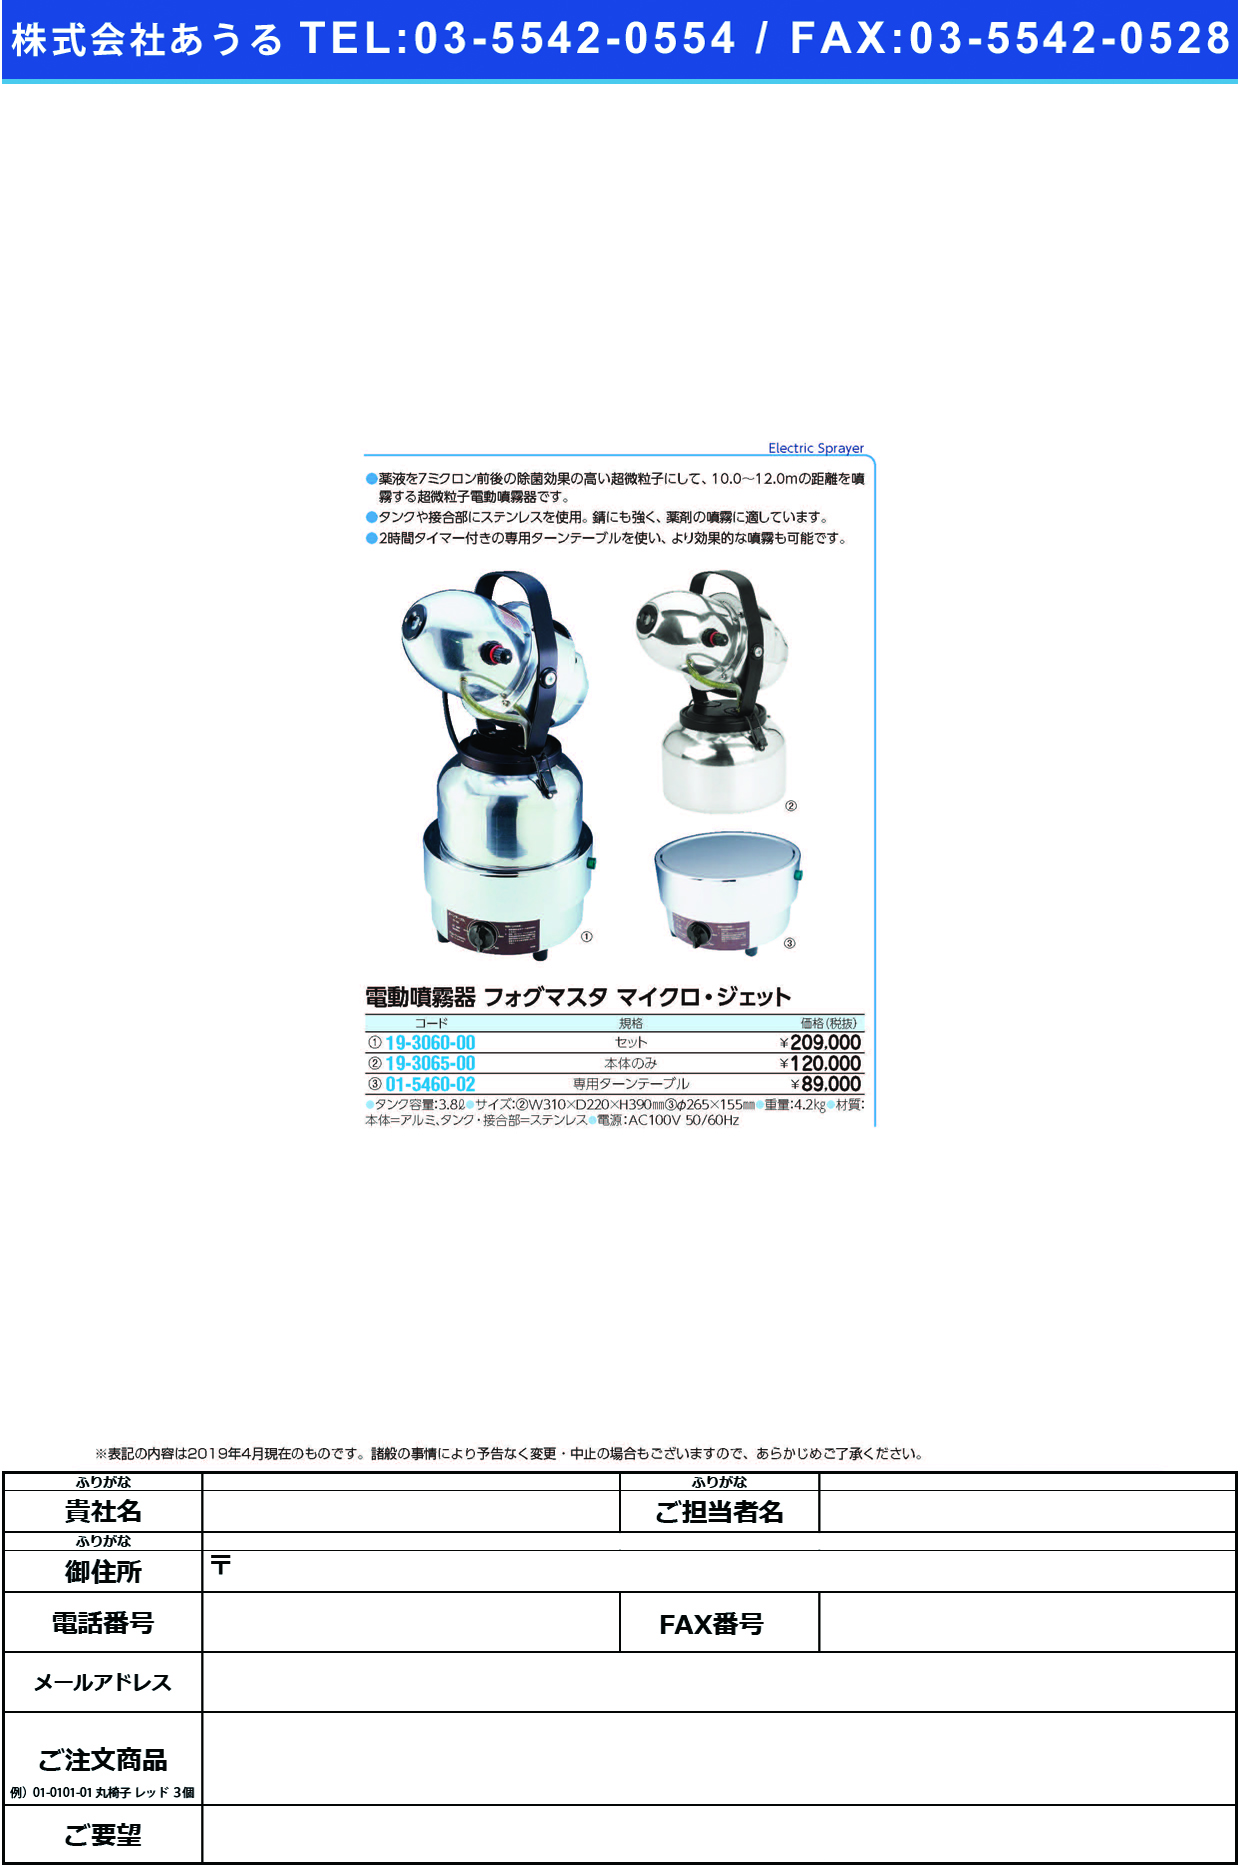 (19-3060-00)フォグマスタ・マイクロジェットセット 7401 ﾌｫｸﾞﾏｽﾀﾏｲｸﾛｼﾞｪｯﾄｾｯﾄ【1台単位】【2019年カタログ商品】